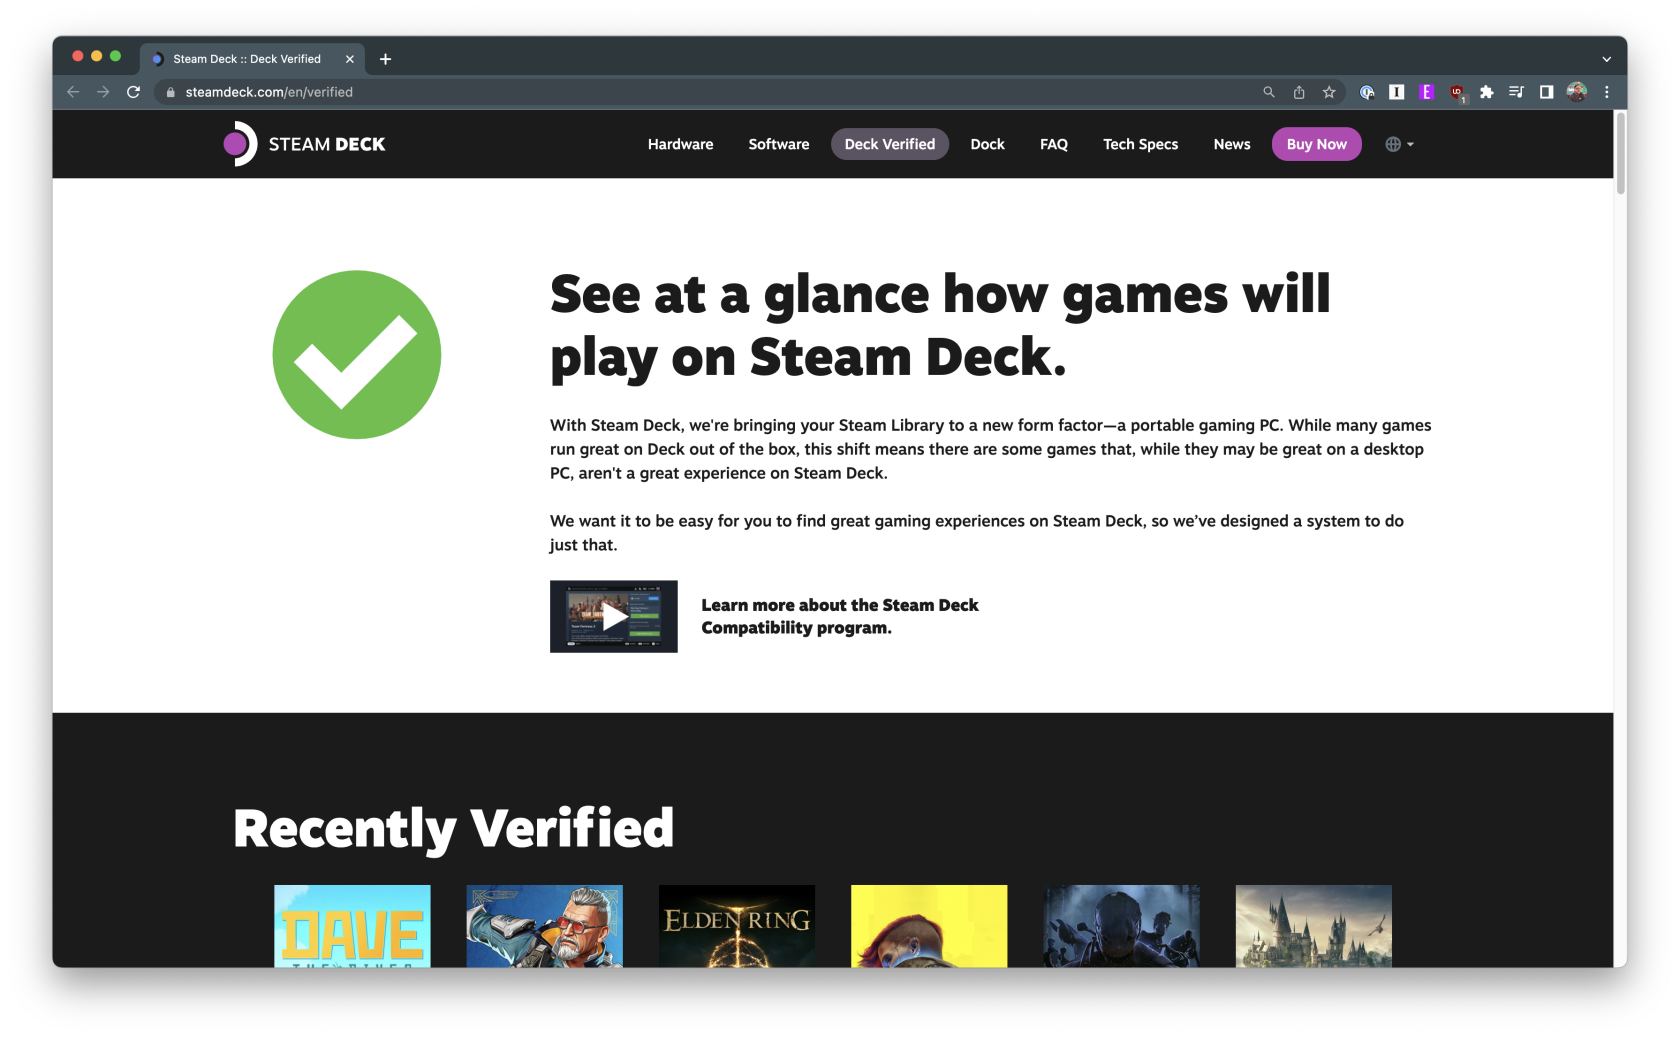 So überprüfen Sie die Spielkompatibilität auf dem Steam Deck